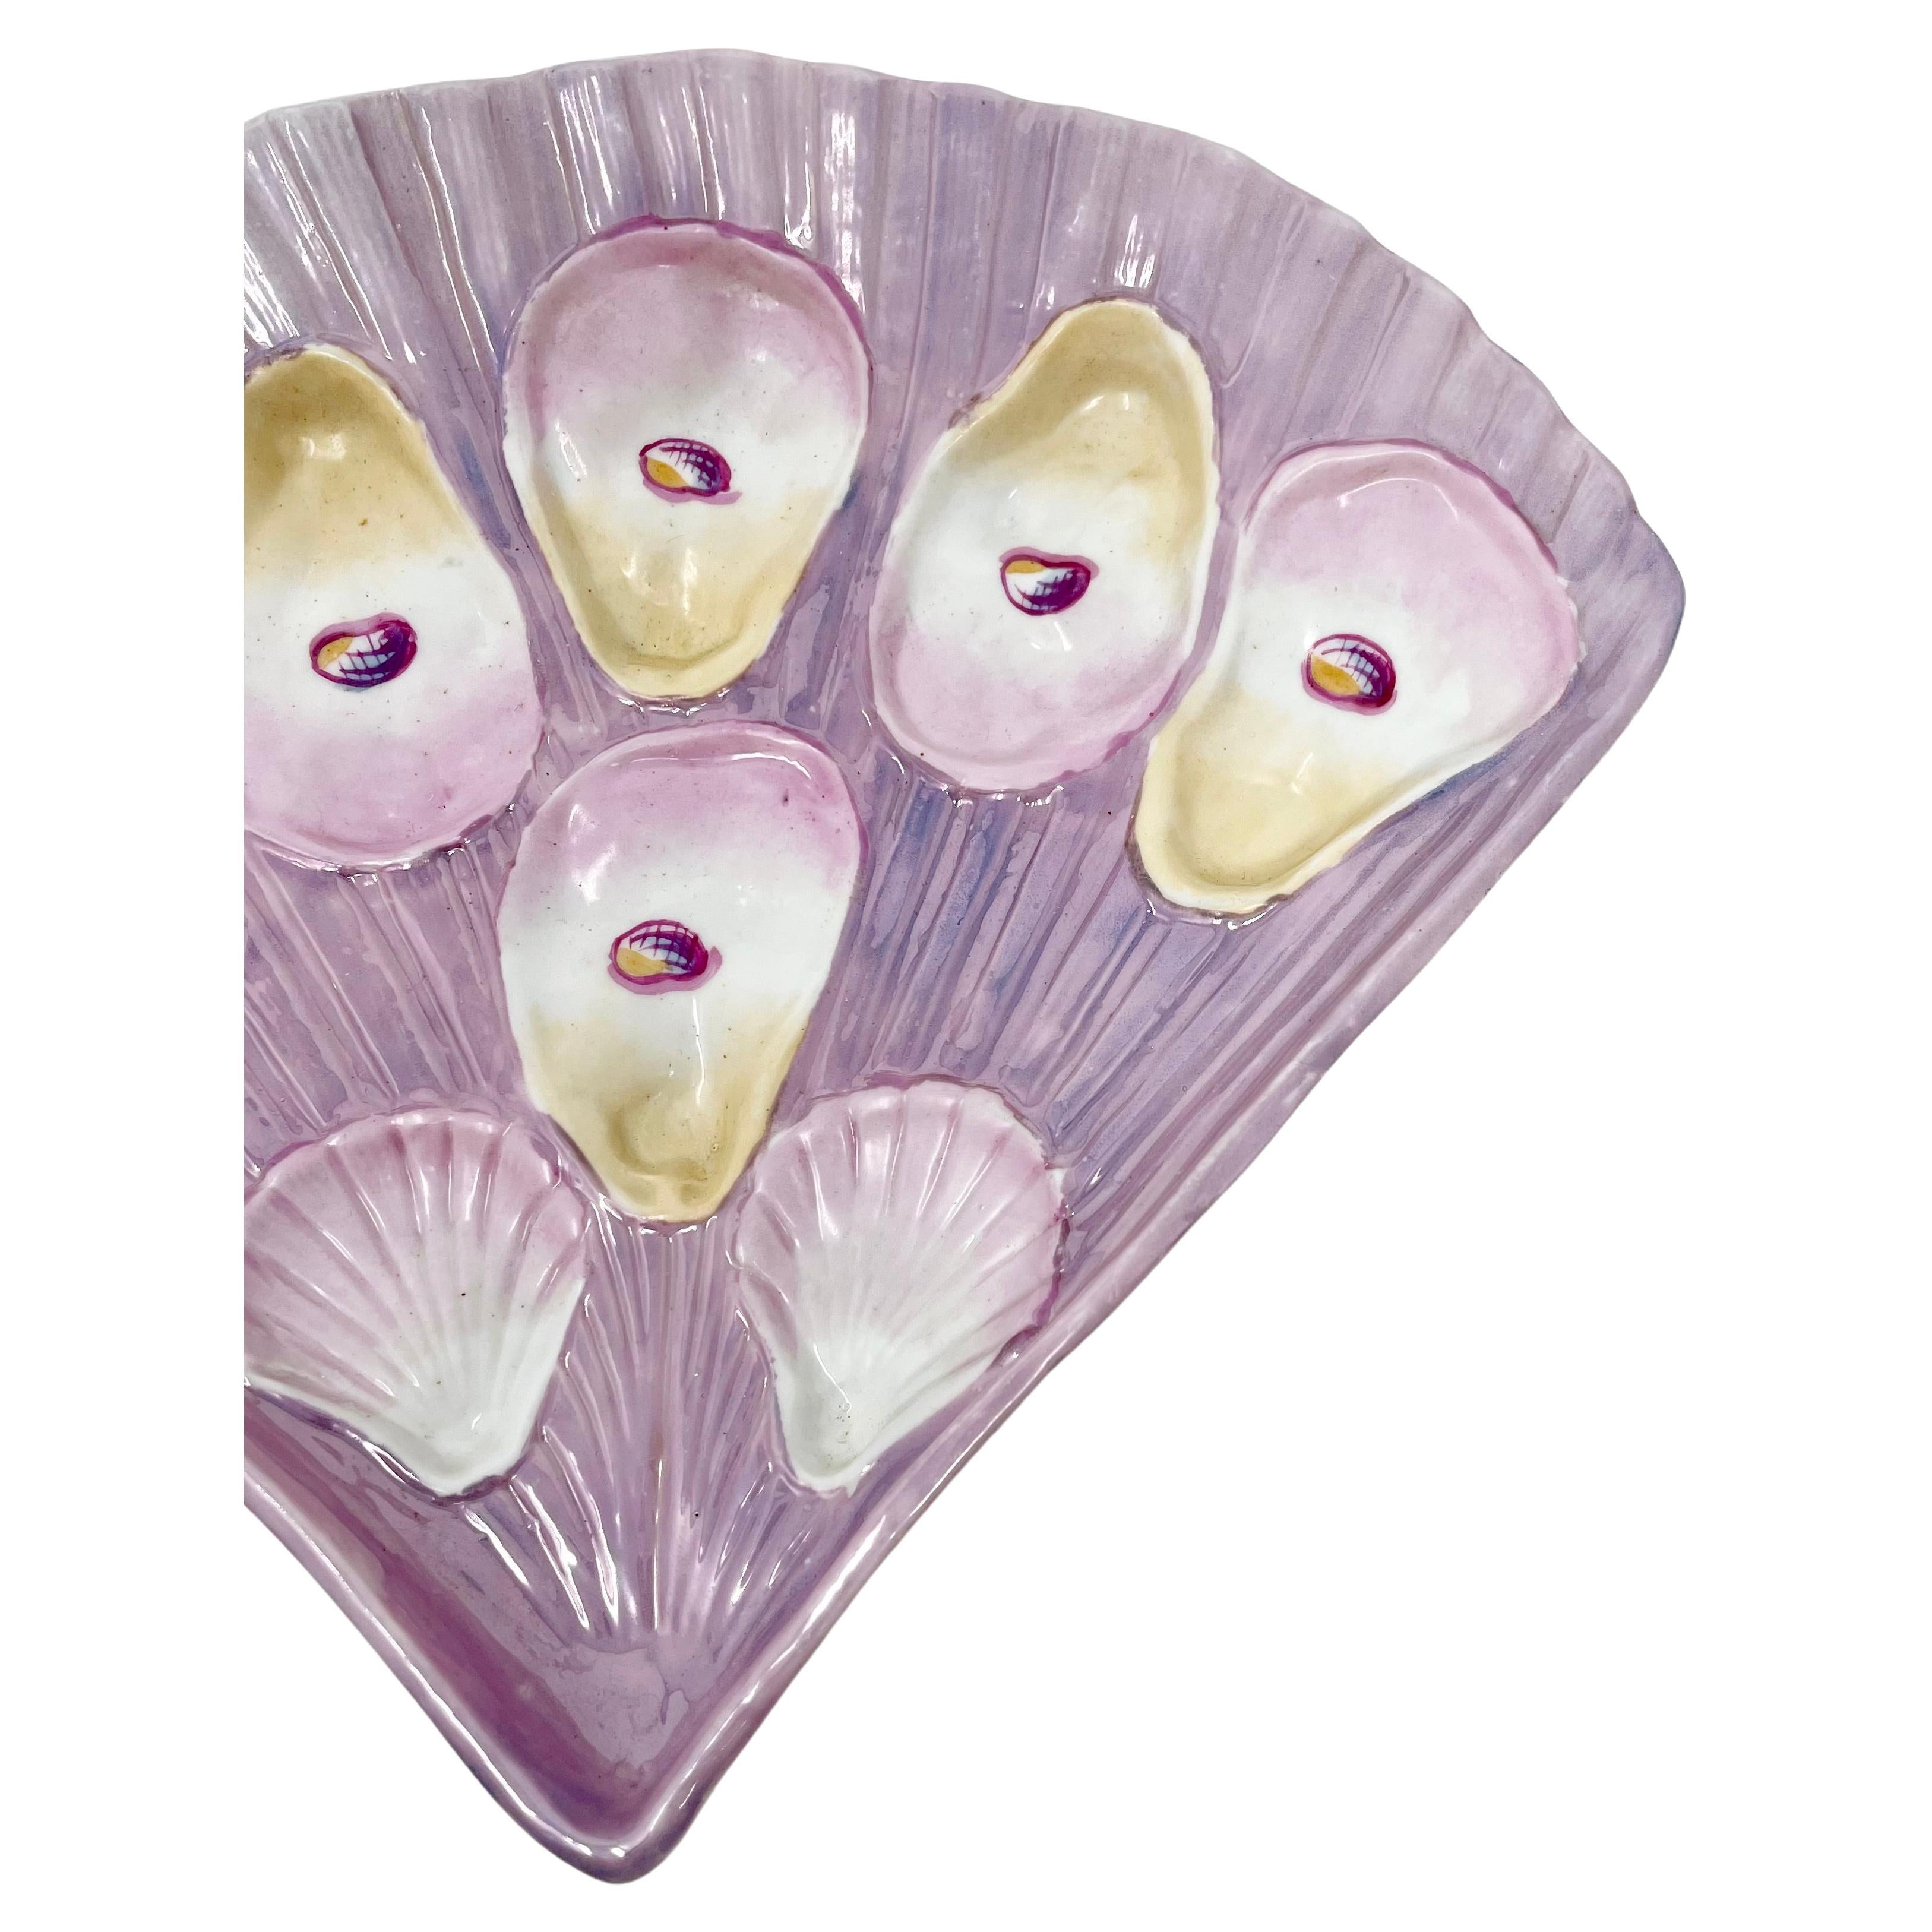 Rare assiette à huîtres en porcelaine allemande ancienne, en forme d'éventail et au lustre rose, vers 1890.
Cette assiette est magnifique avec sa glaçure perlée rose violacée.